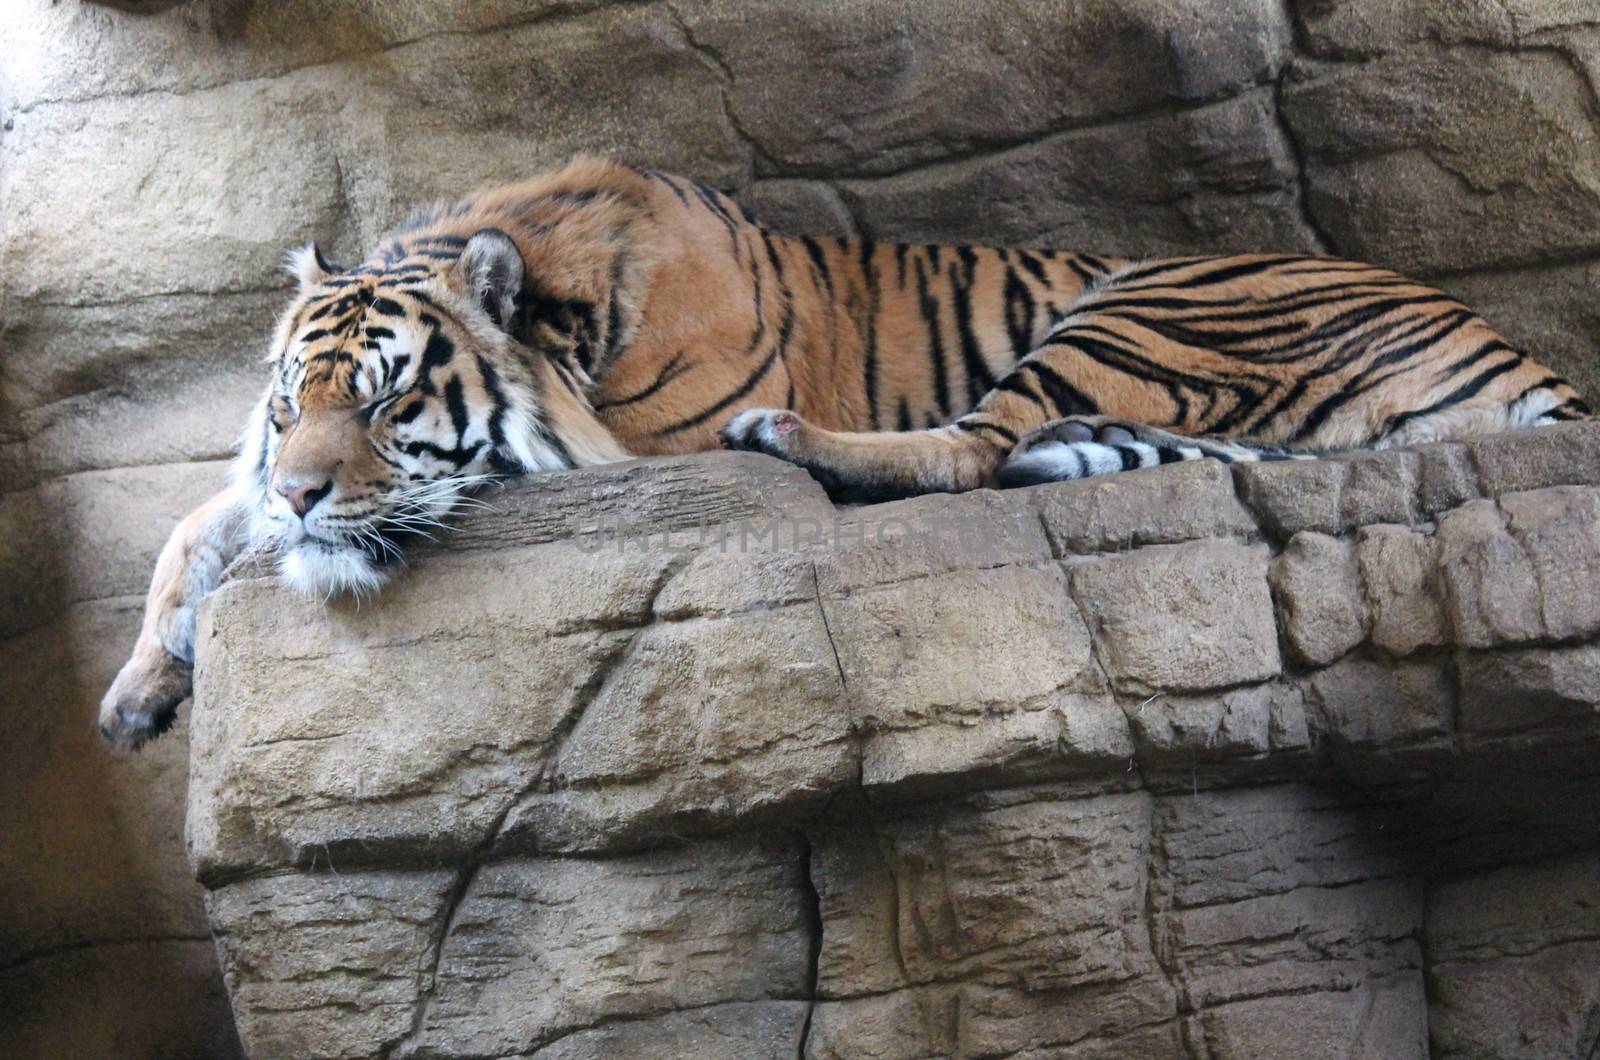 Sumatran Tiger rare and endagered by cheekylorns